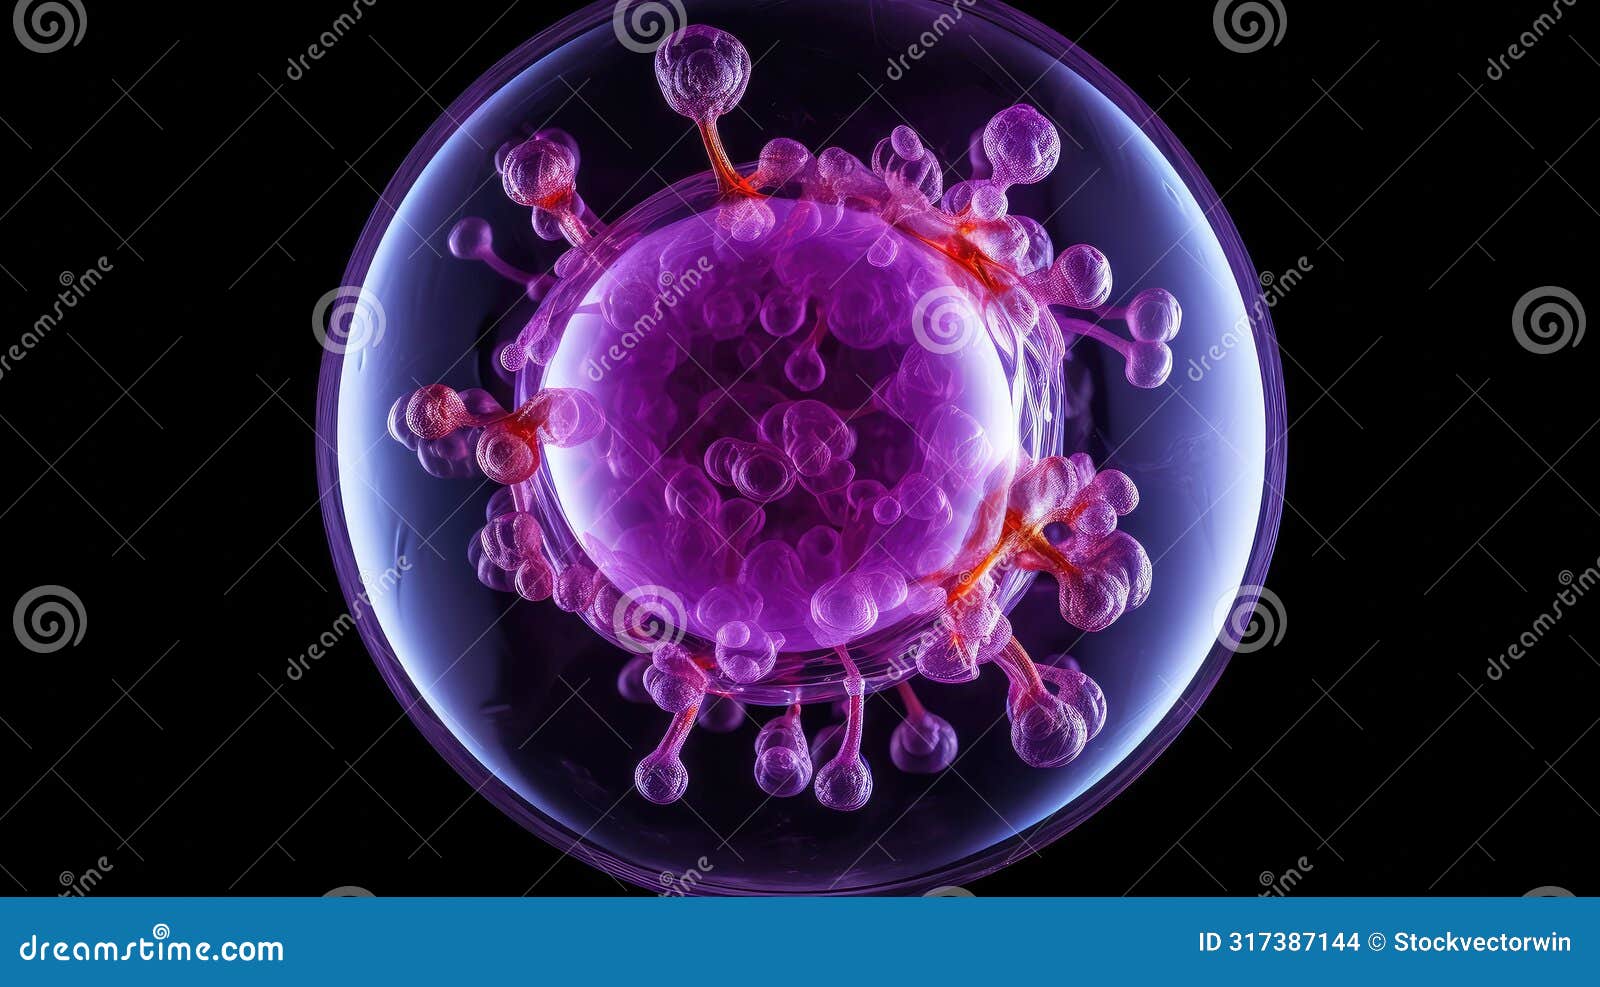 coloration purple cells